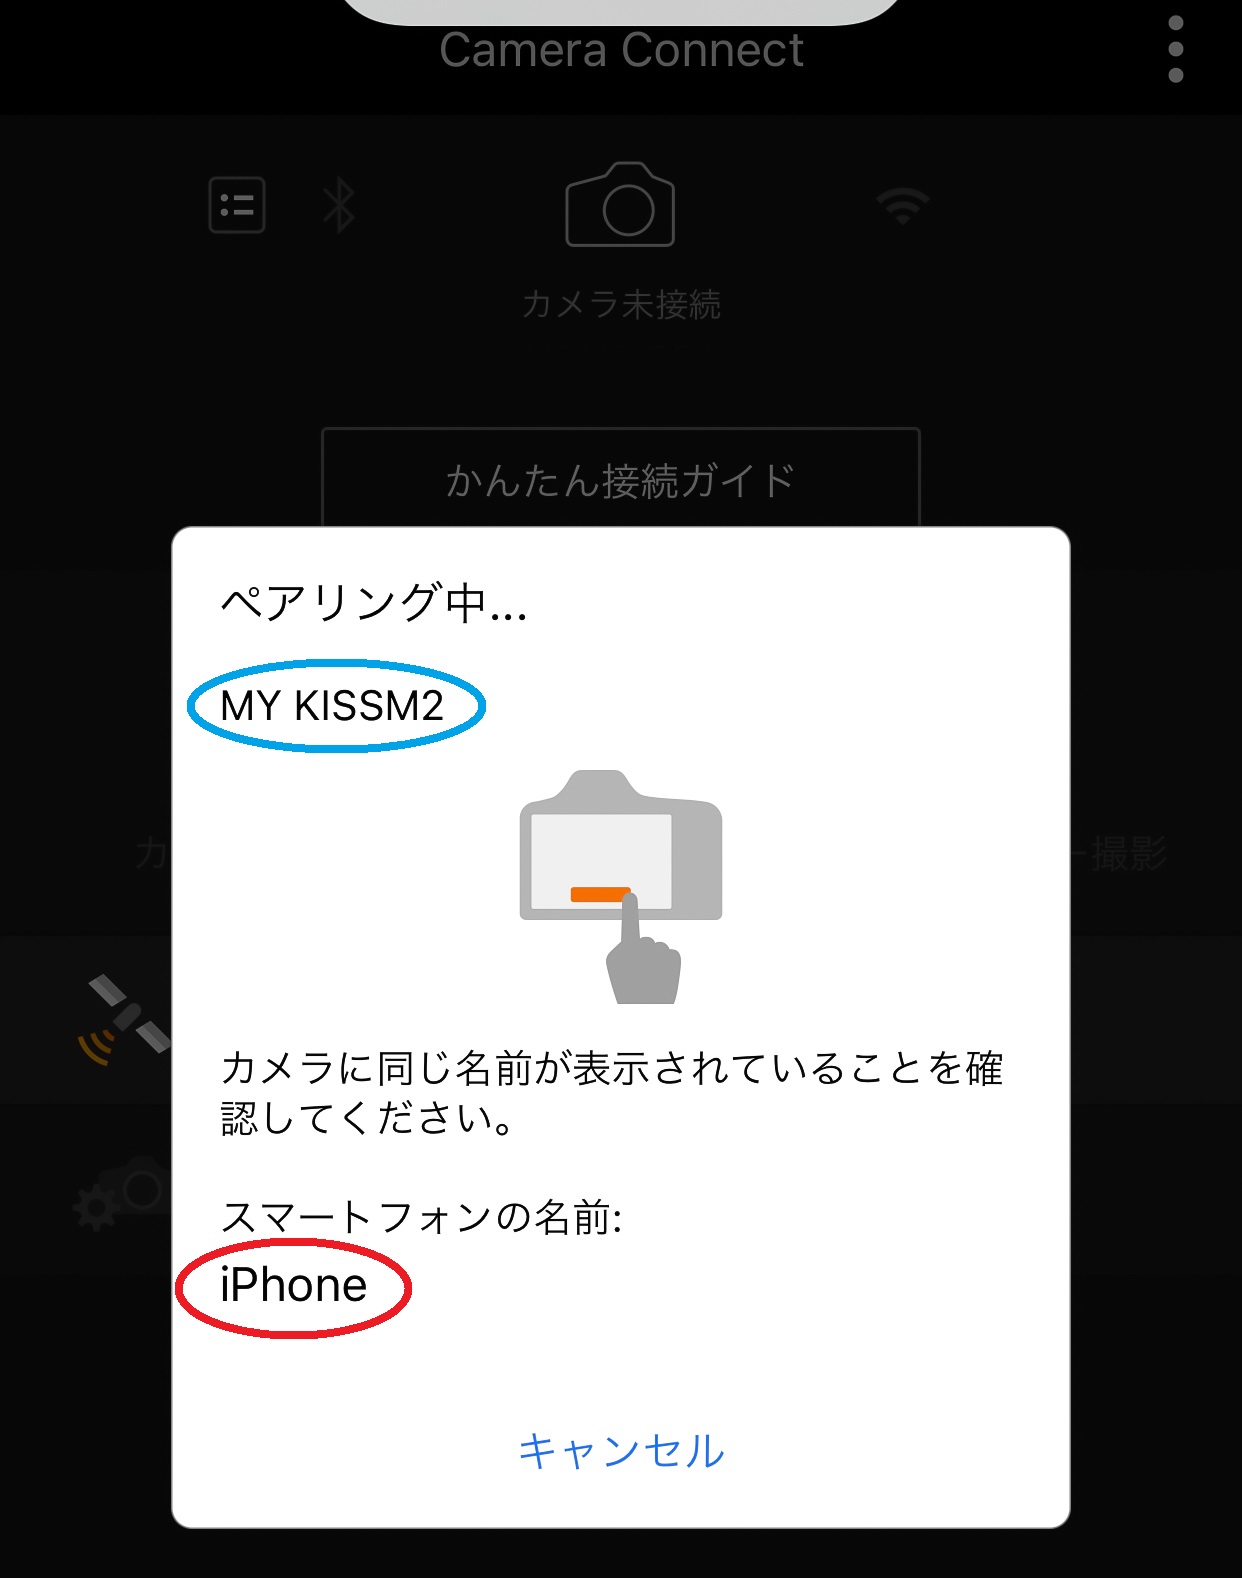 iphone画面